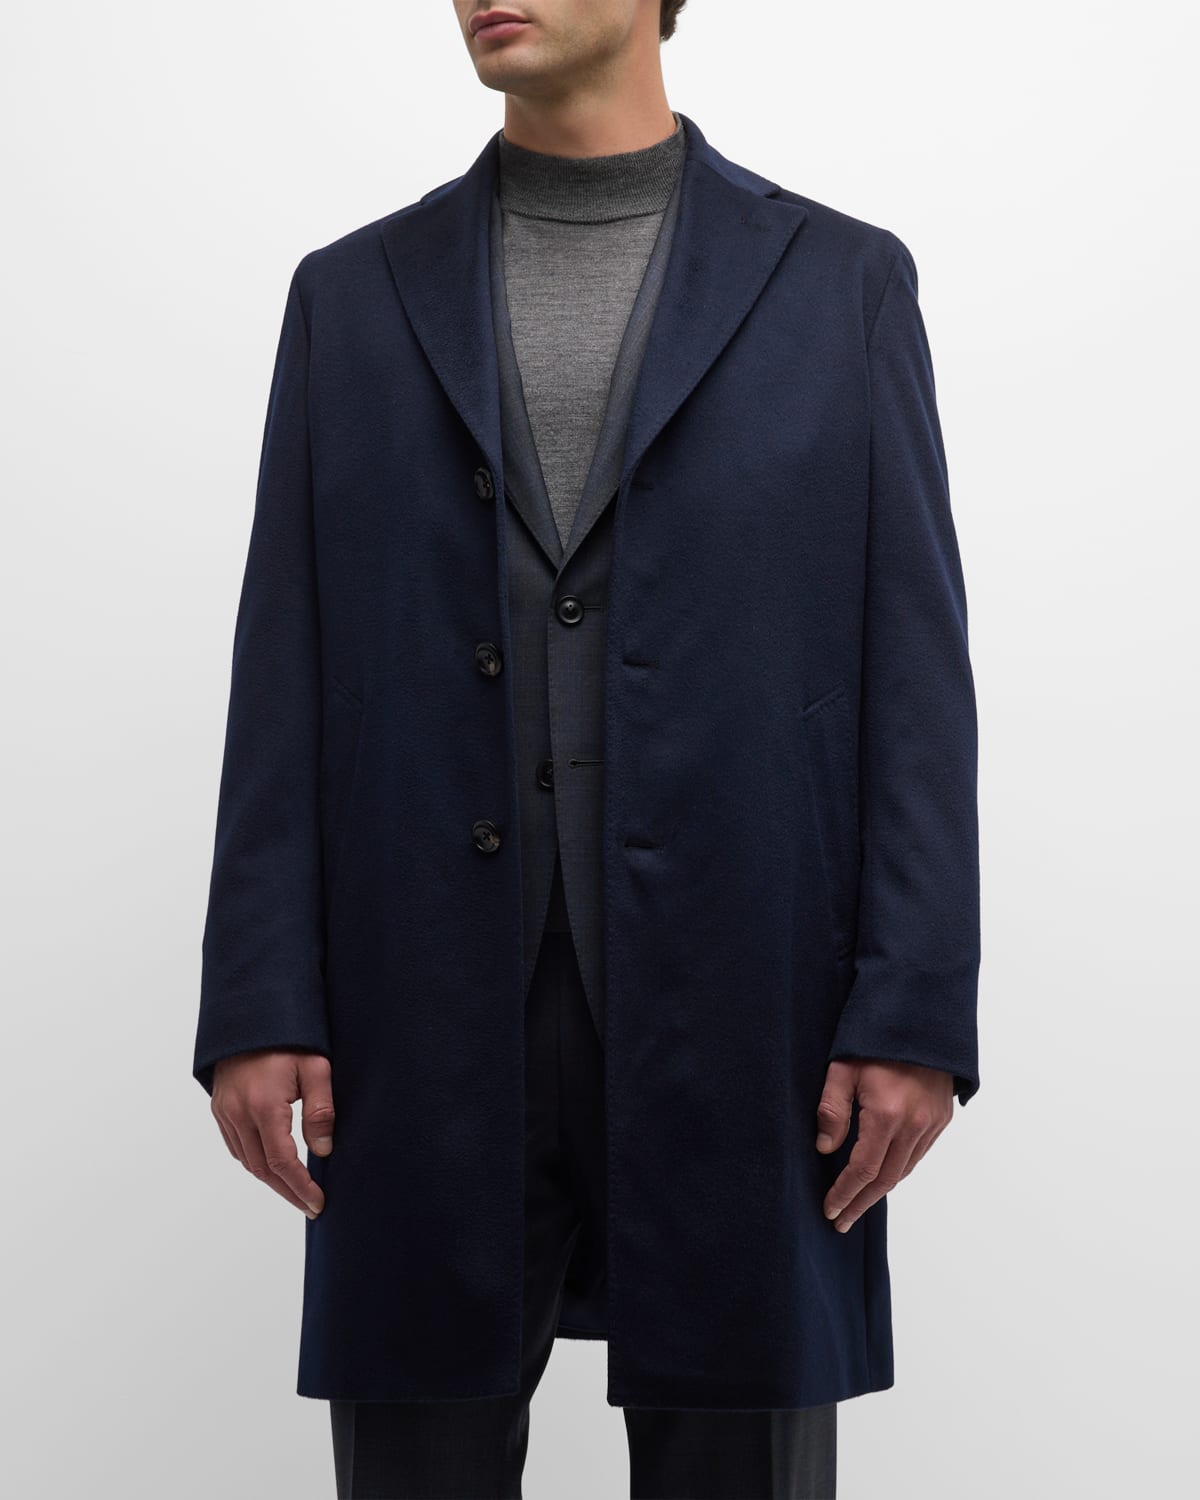 Neiman Marcus Men's Solid Cashmere Topcoat In Blue